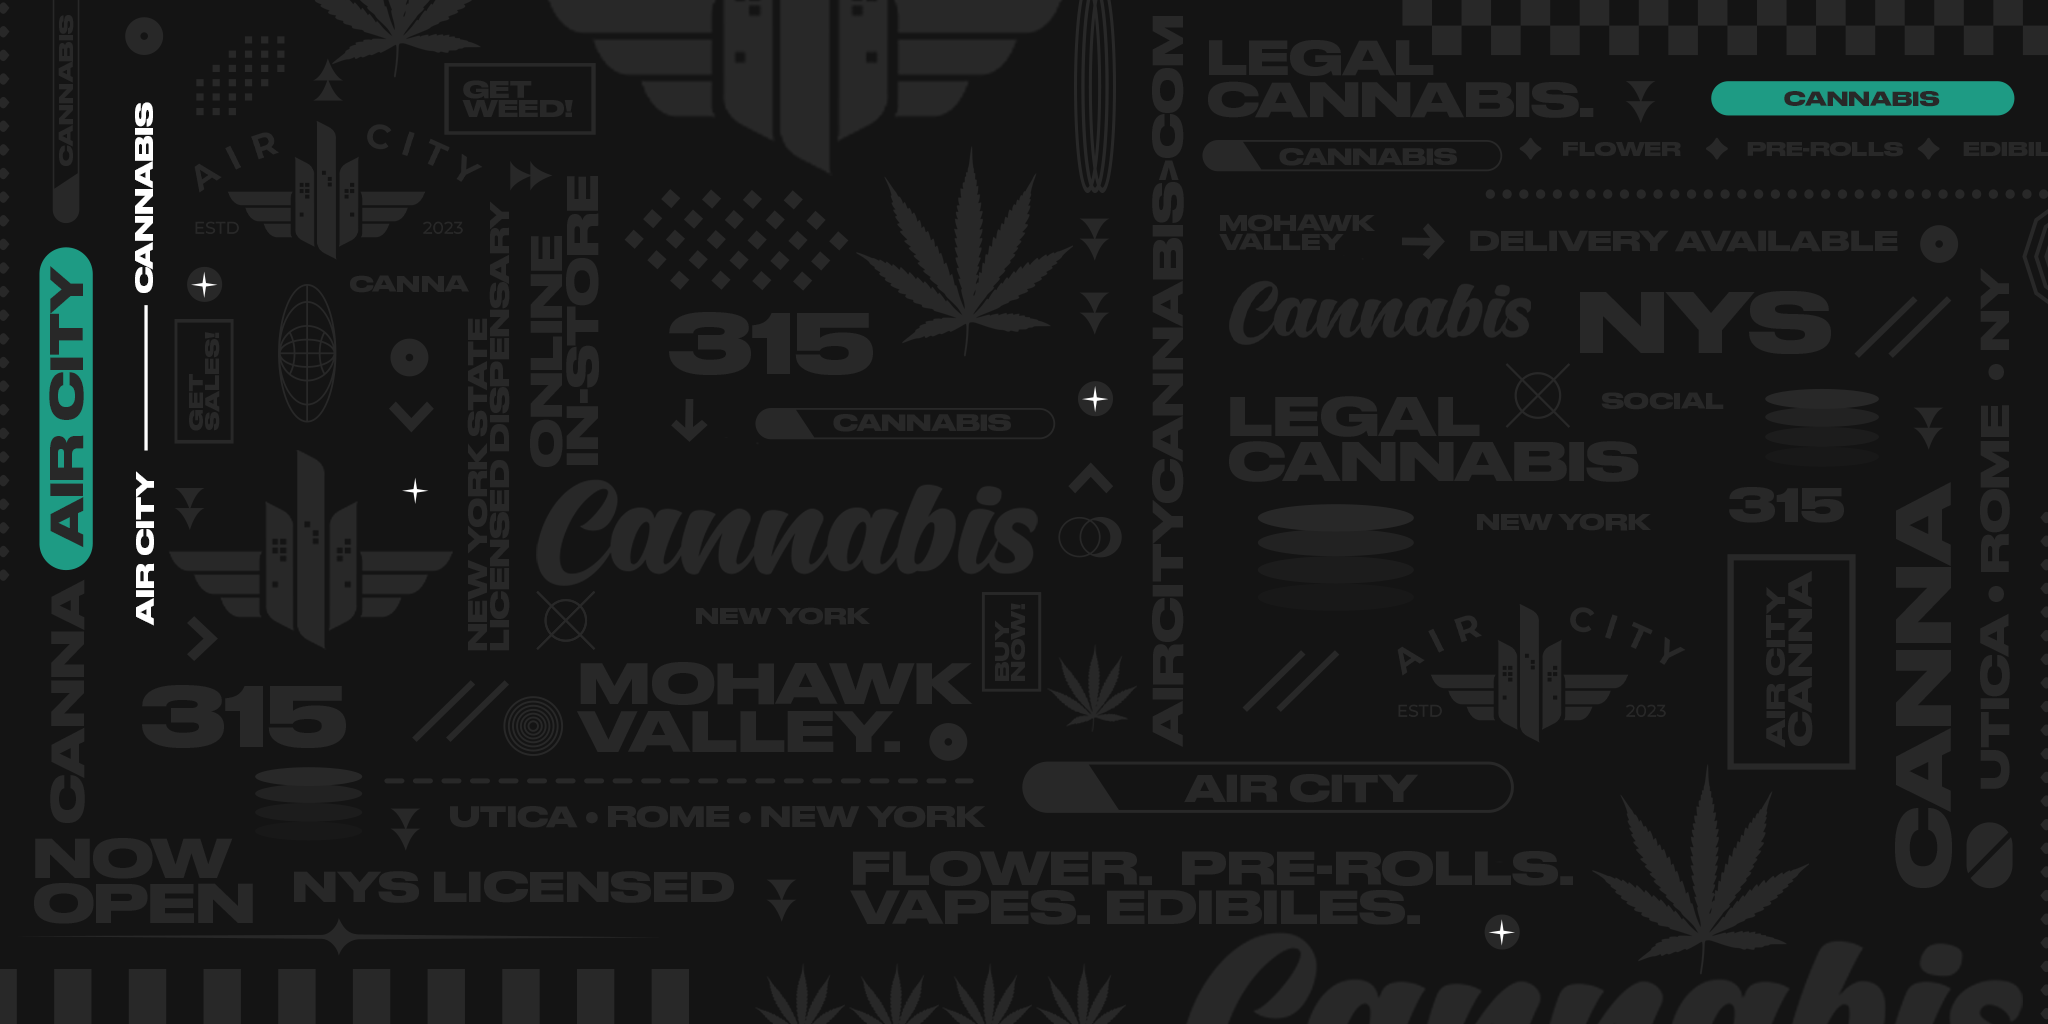 Air City Cannabis